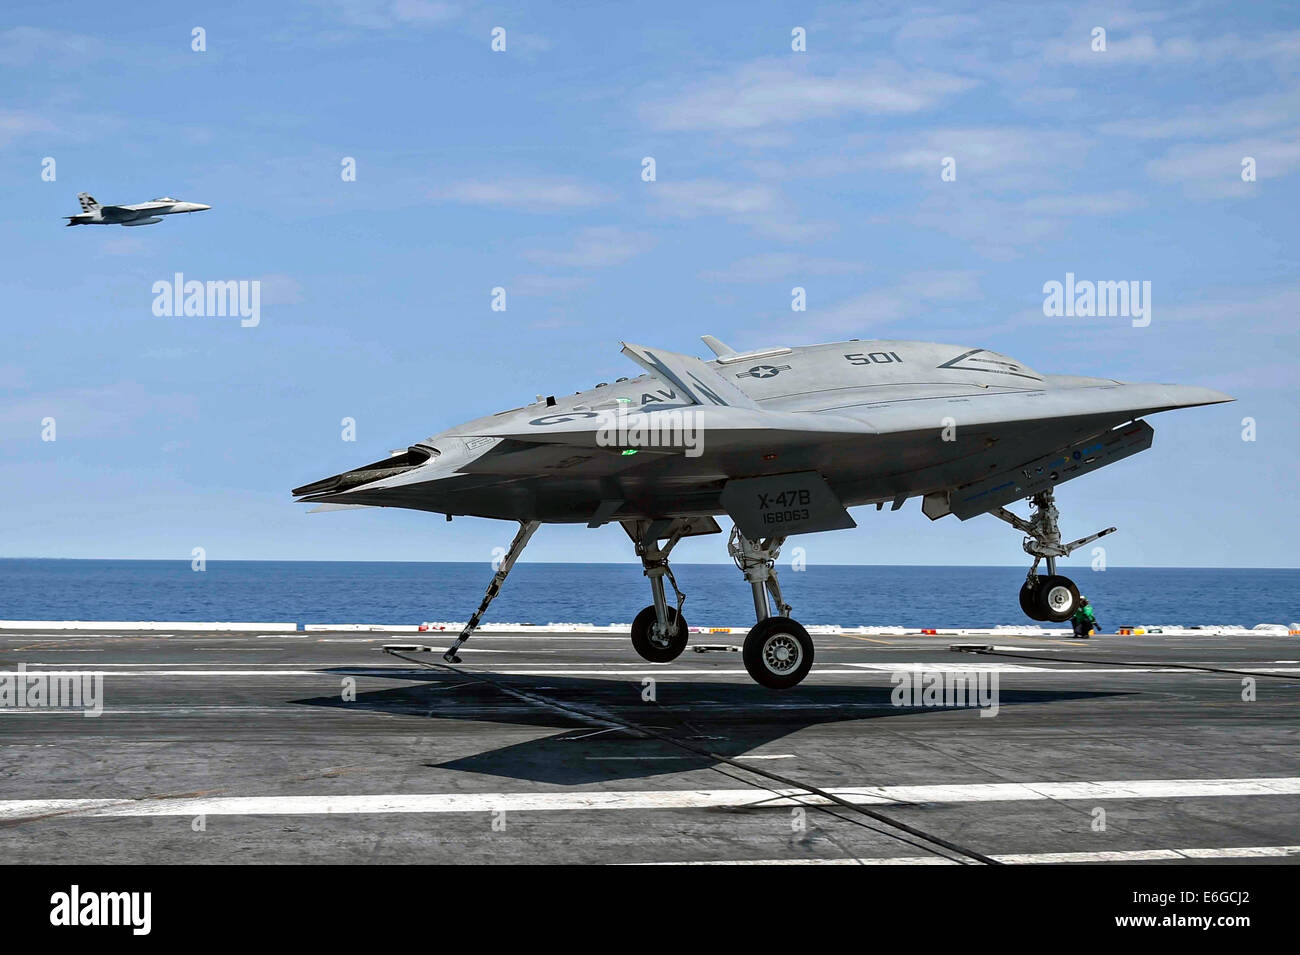 Die US Navy X-47 b autonomen stealth unbemannten eine verhaftete Landung auf dem Flugdeck des Flugzeugträgers USS Theodore Roosevelt während Tests demonstriert die Fähigkeit führt, sicher und nahtlos mit bemannten Luftfahrzeugen 17. August 2014 in den Atlantischen Ozean zu betreiben. Stockfoto